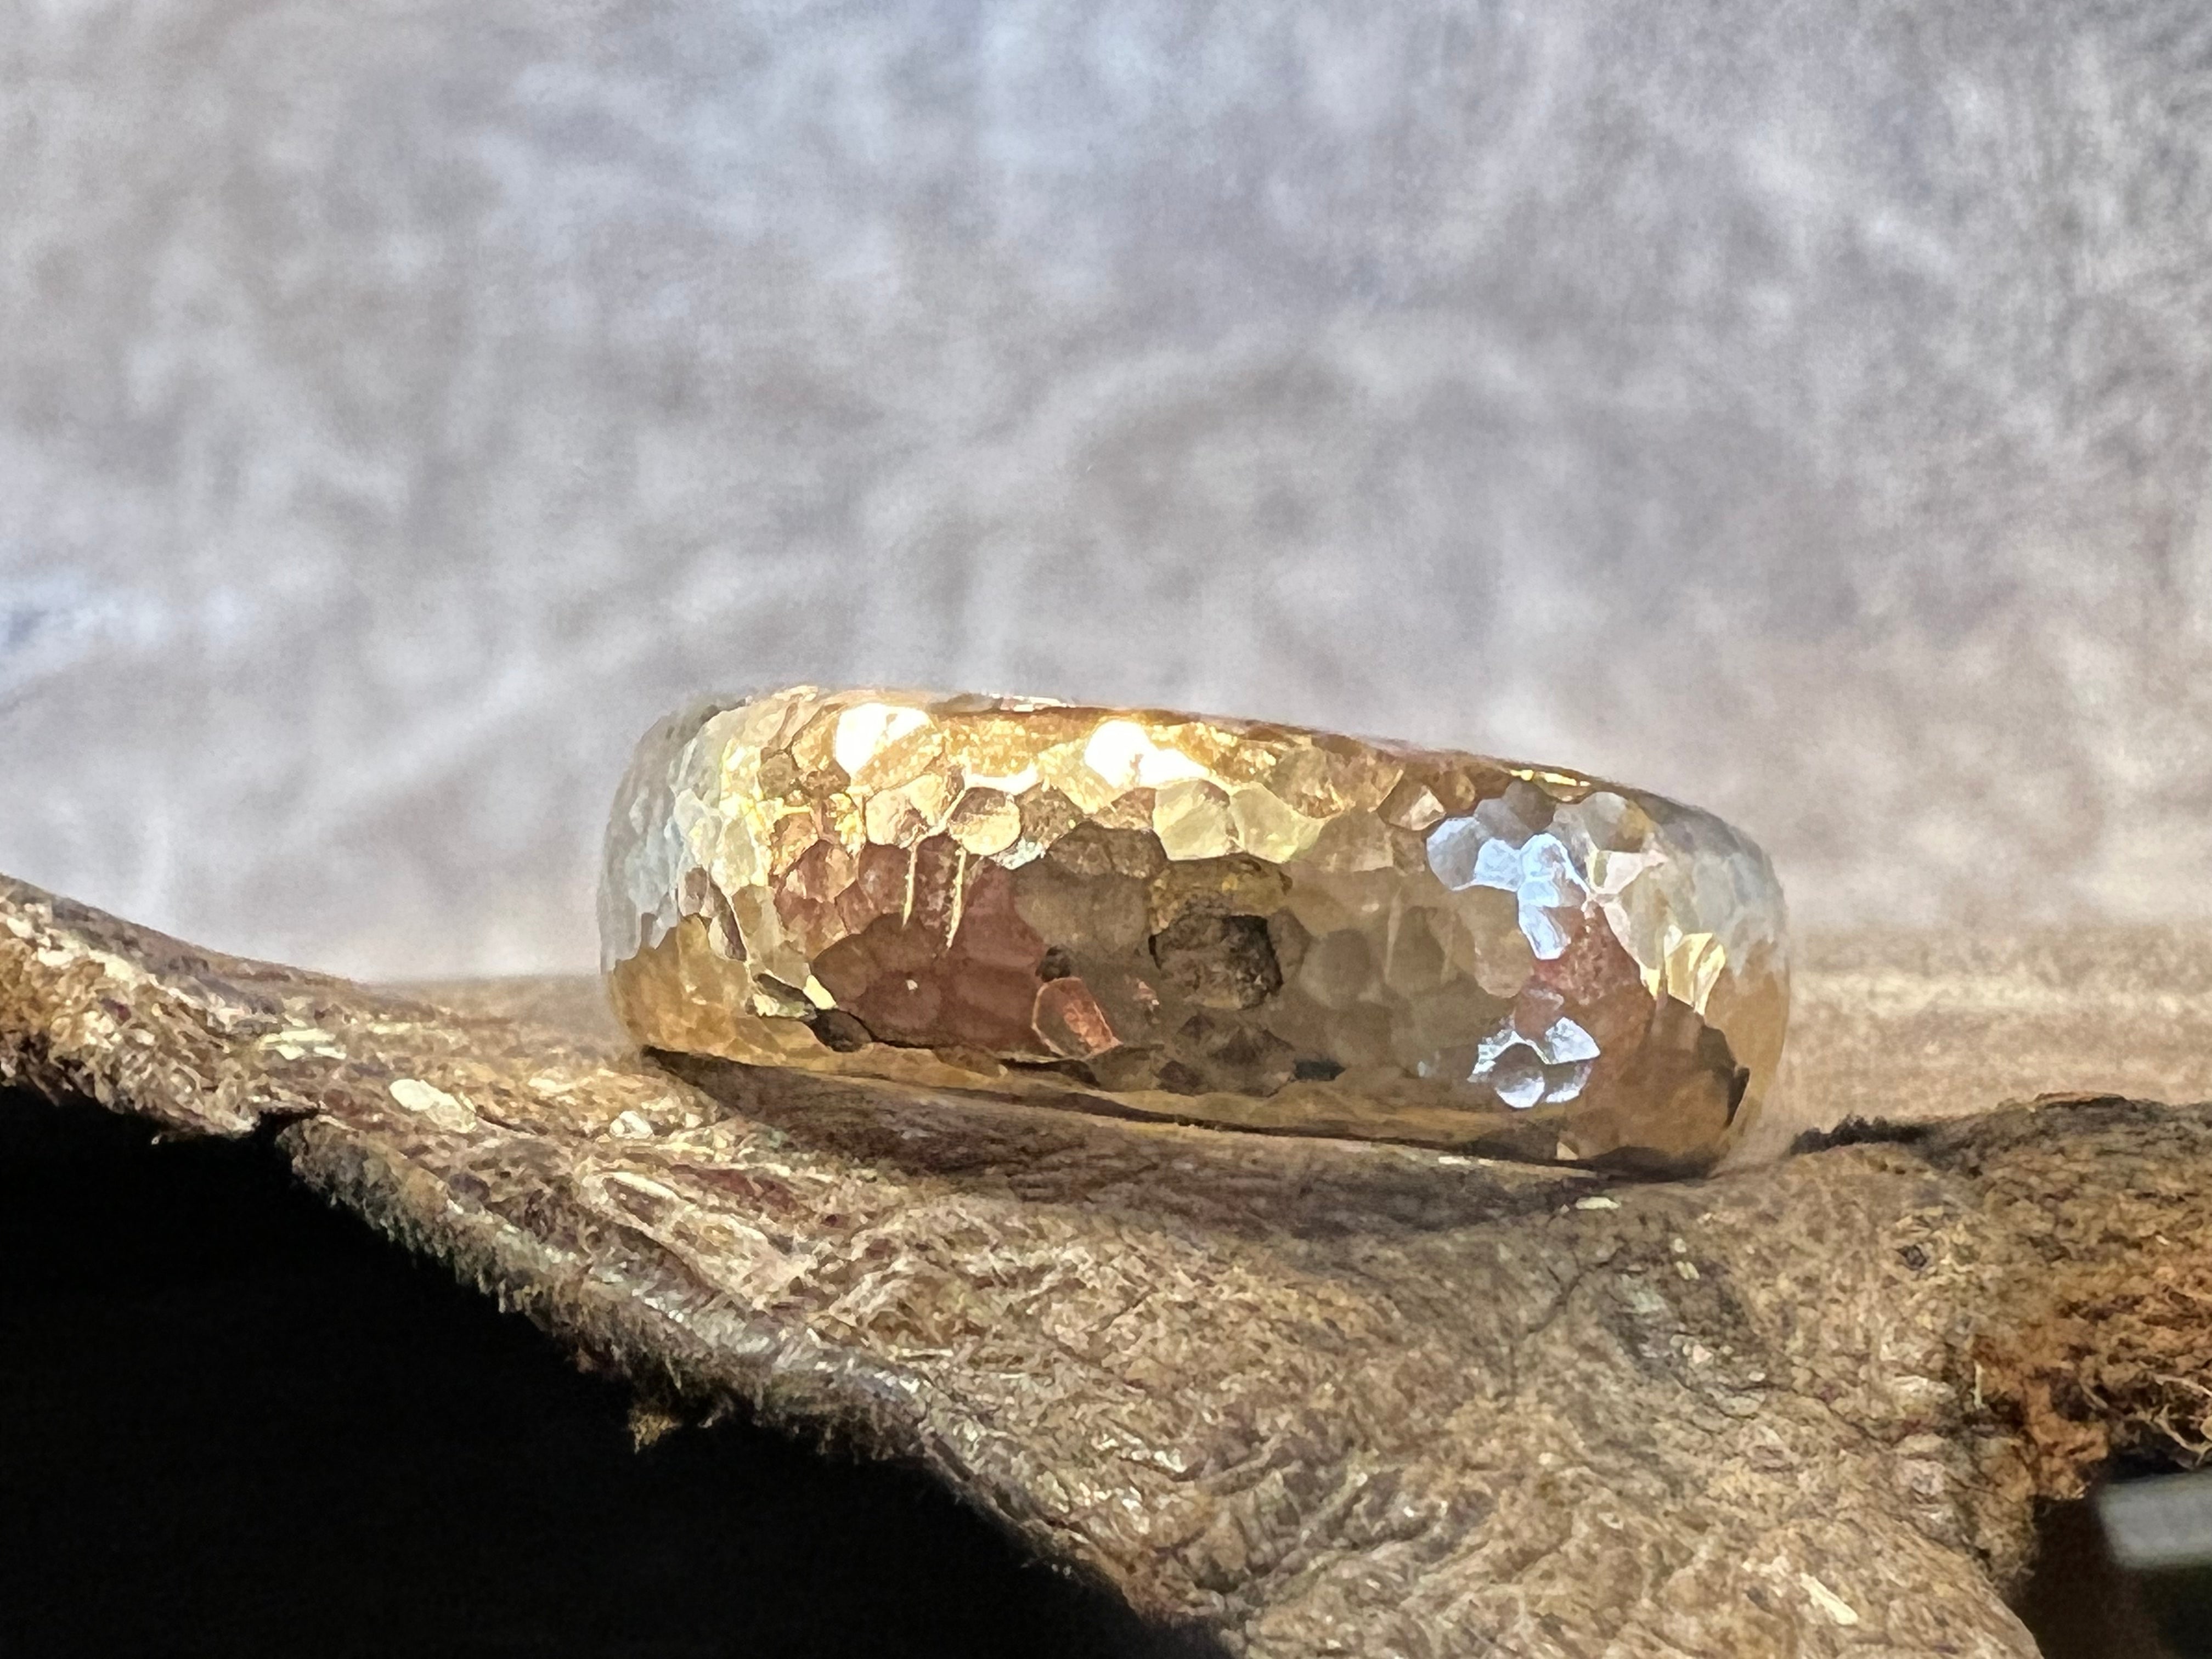 Guld ring oval 8x4 mm hammerslået med små buler